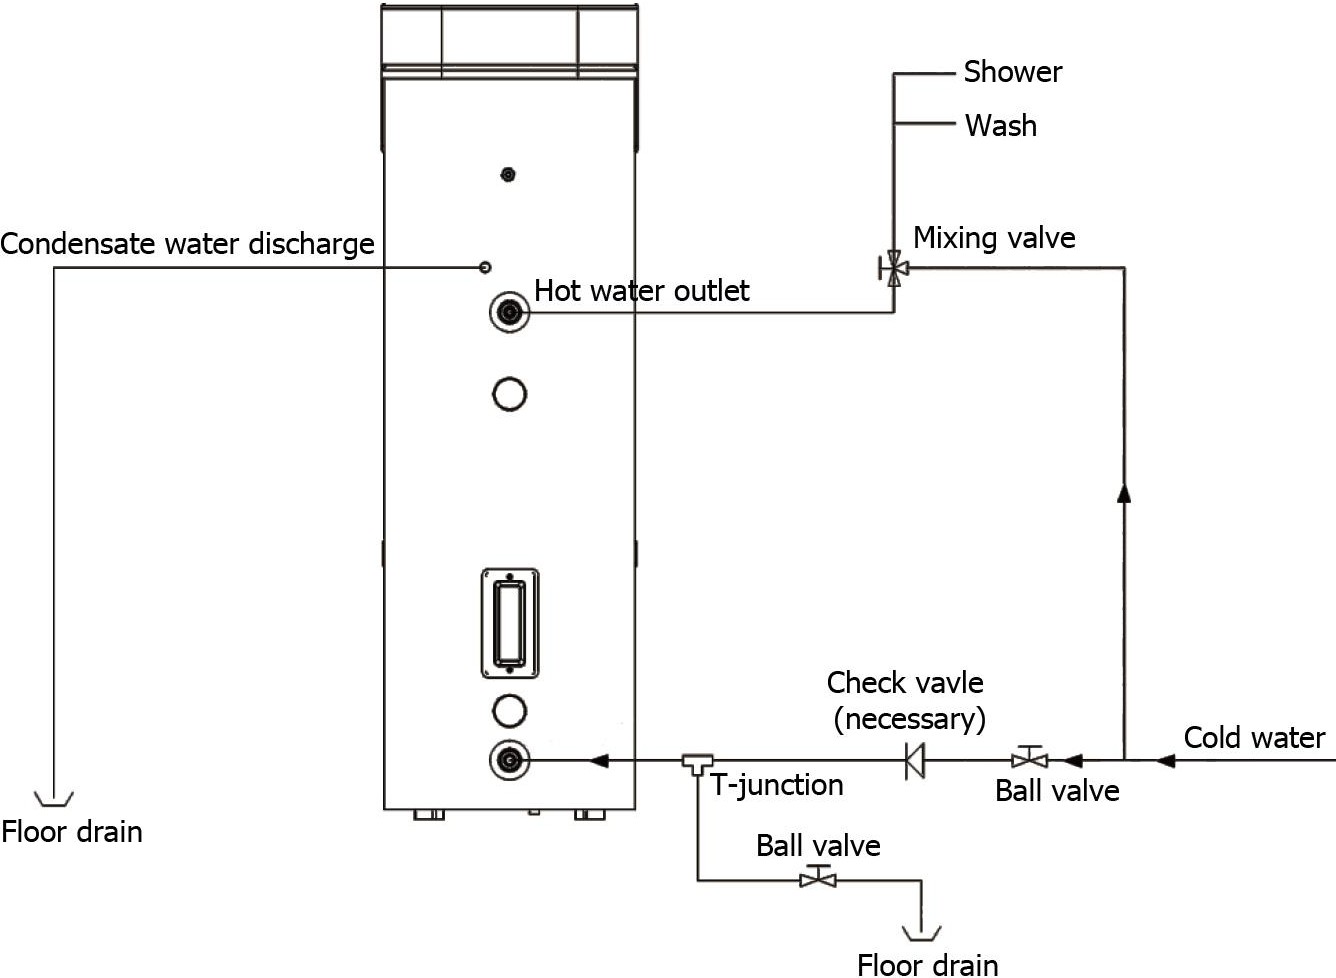 Diagrama de instalación y conexión del calentador de agua.